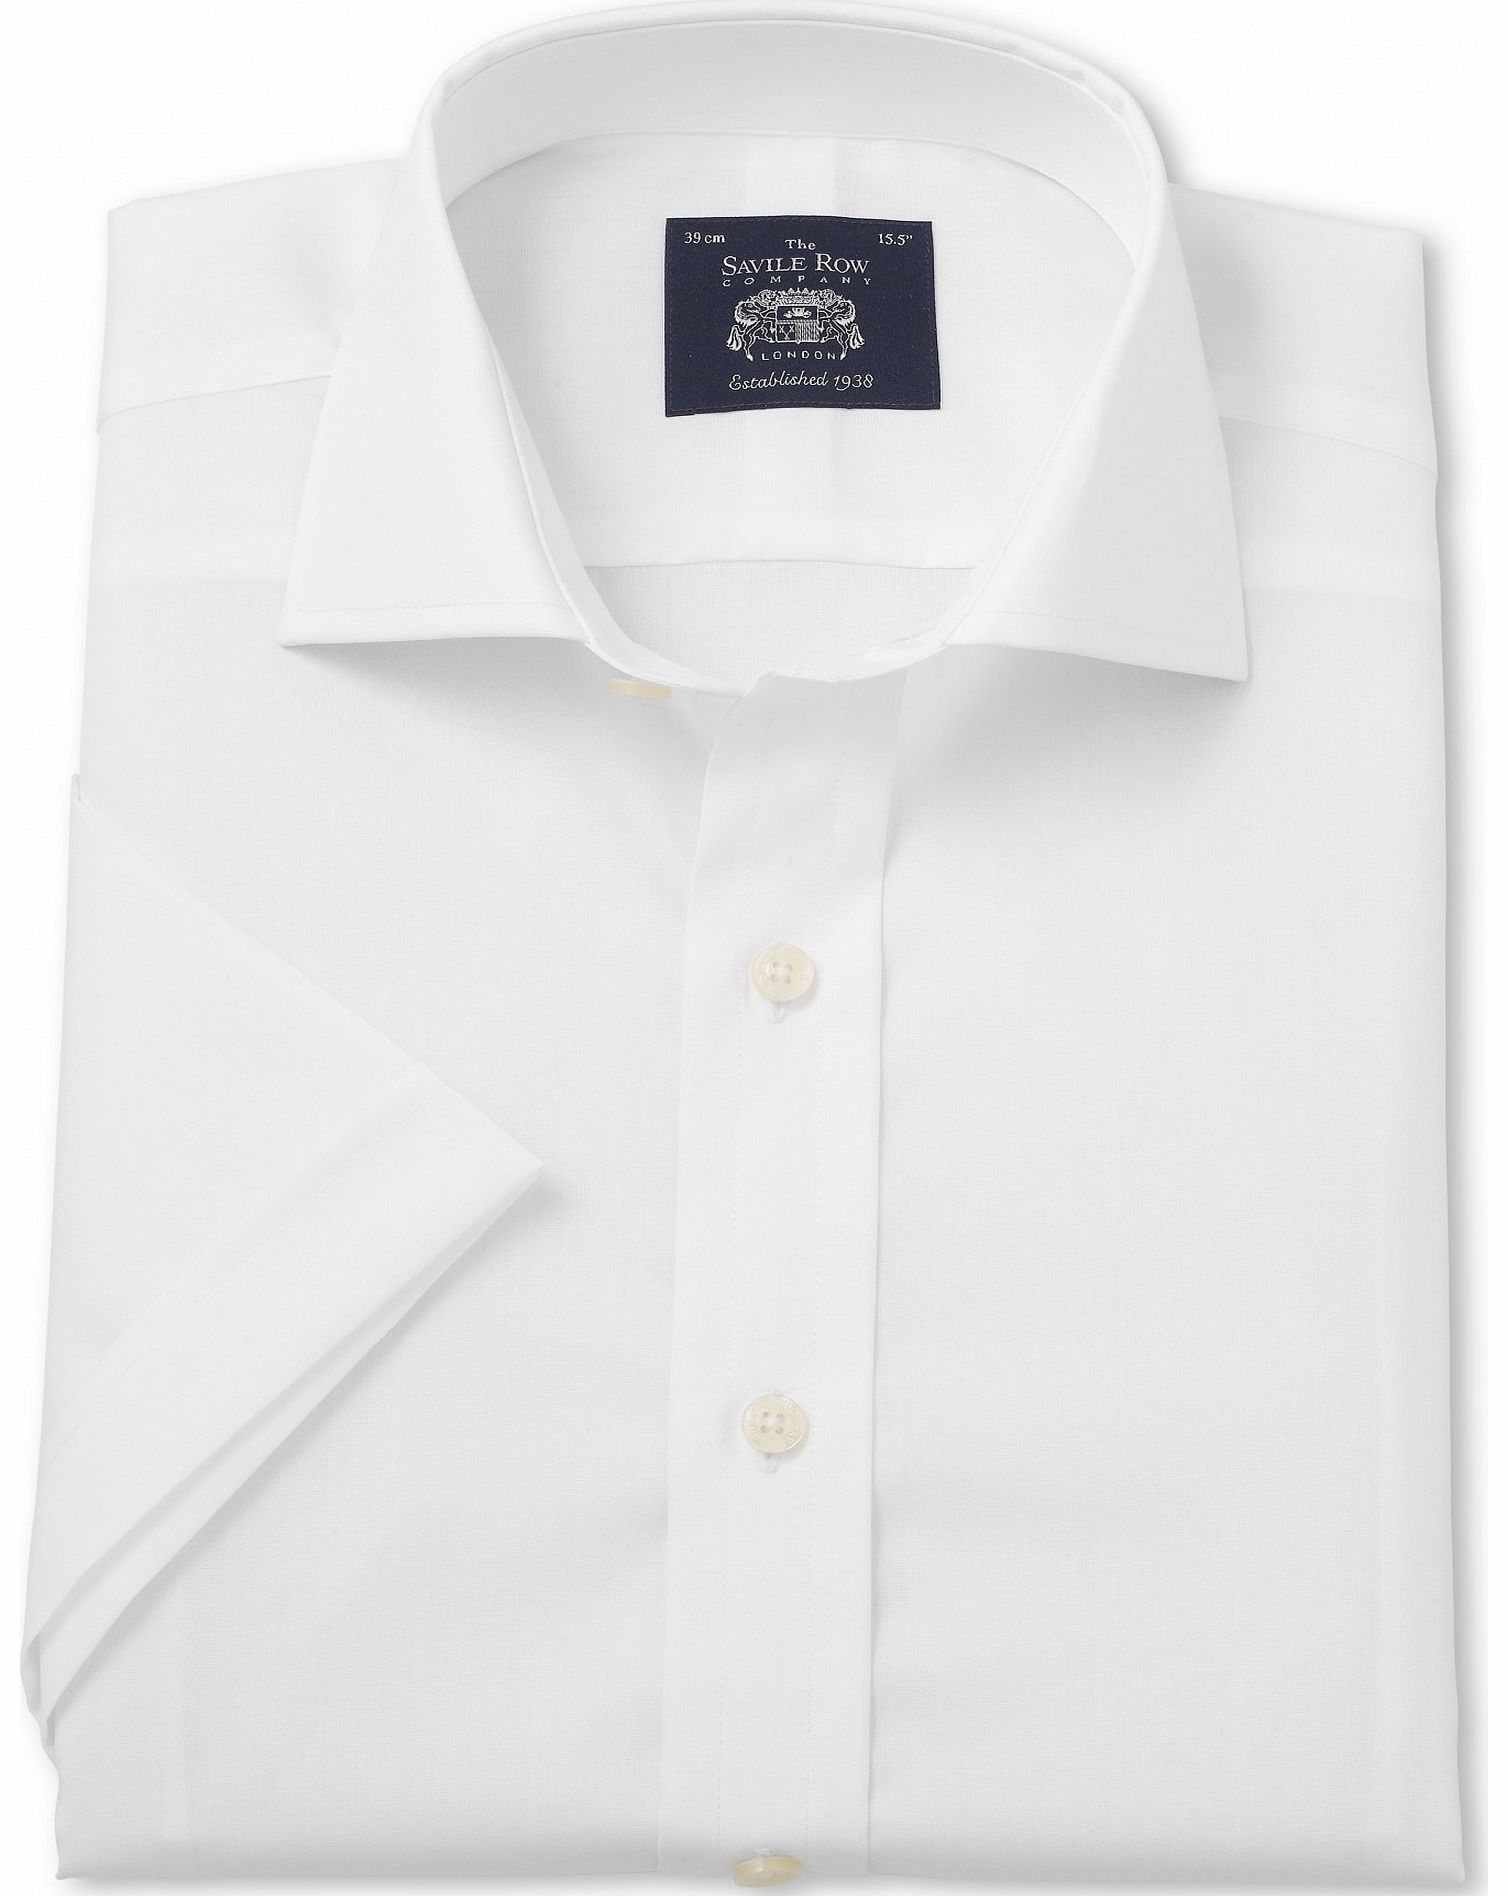 Savile Row Company White Slim Fit Short Sleeve Shirt 17`` Short